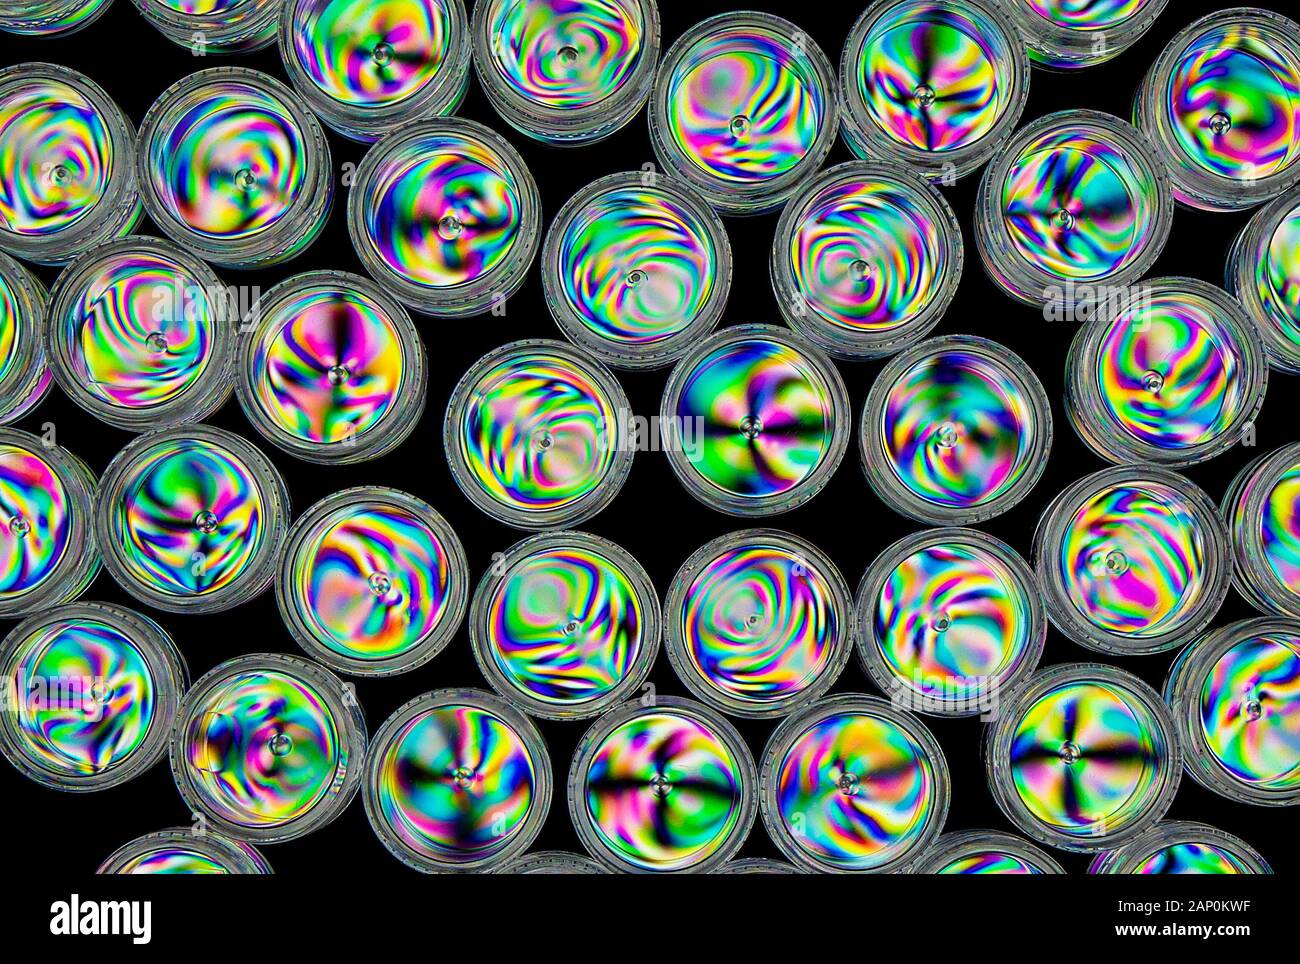 Patrones de tensión coloridos en plástico duro, revelados por imágenes entre dos filtros polarizados cruzados. Foto de stock